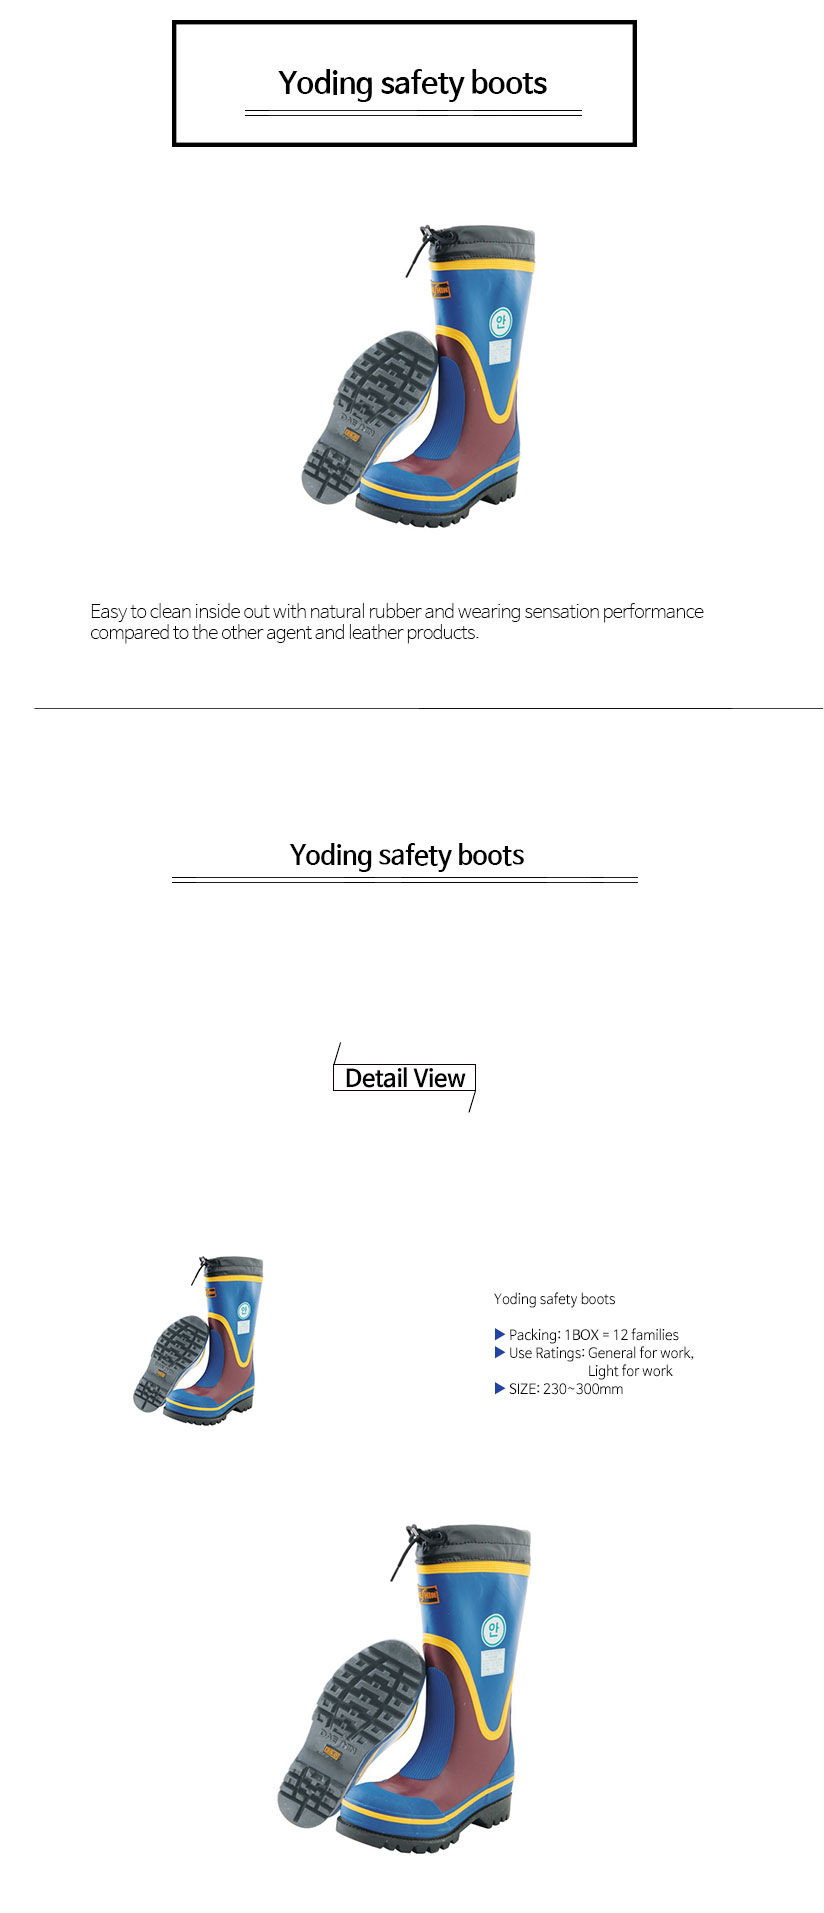 요딩안전장화Yoding-safety-boots.jpg